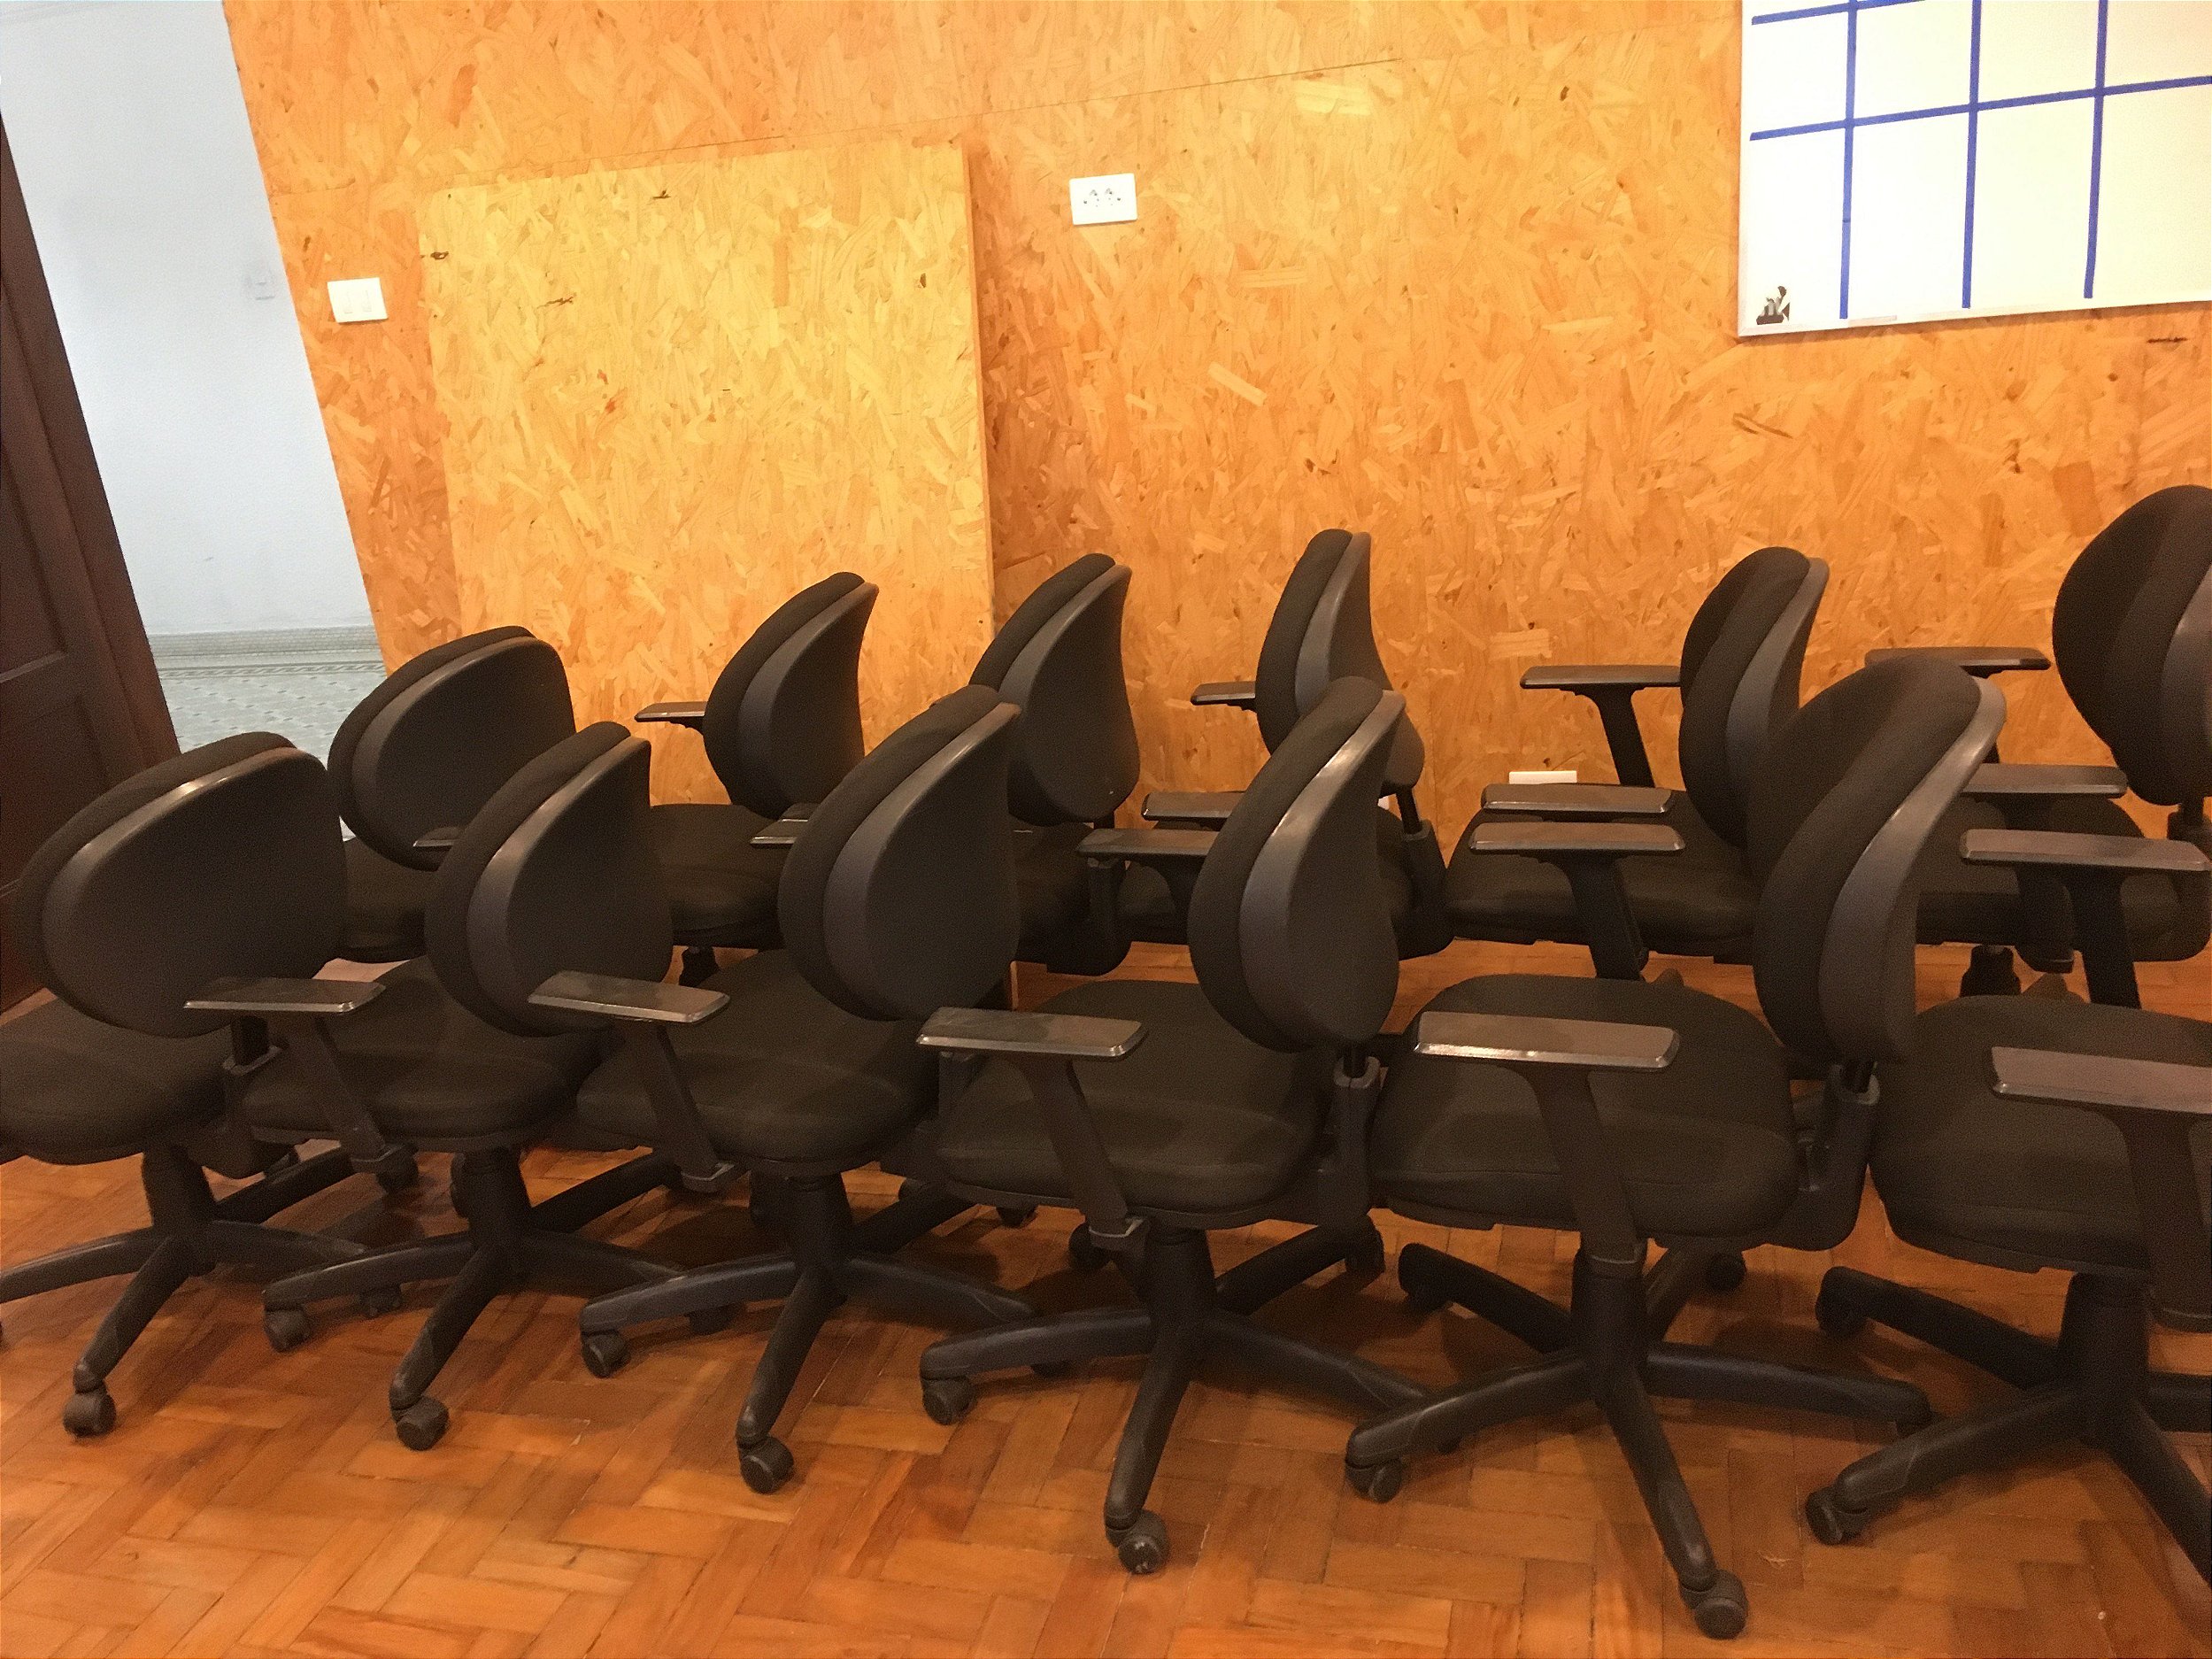 Lote de Cadeiras back sistem - Cadeiras novas e usadas de Escritório